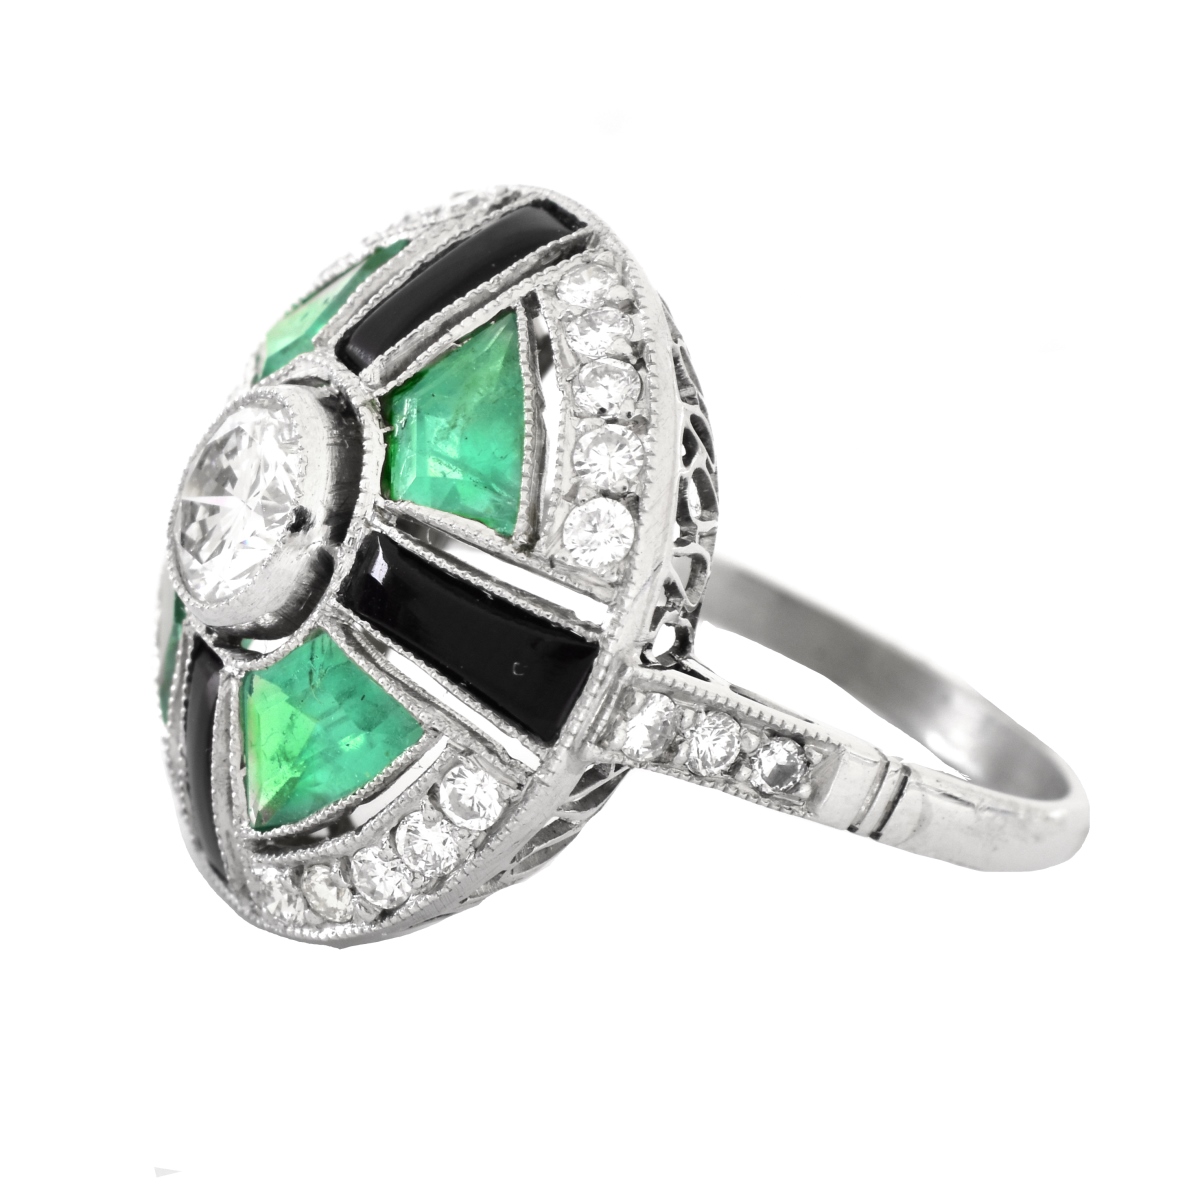 Art Deco Emerald, Diamond and Platinum Ring